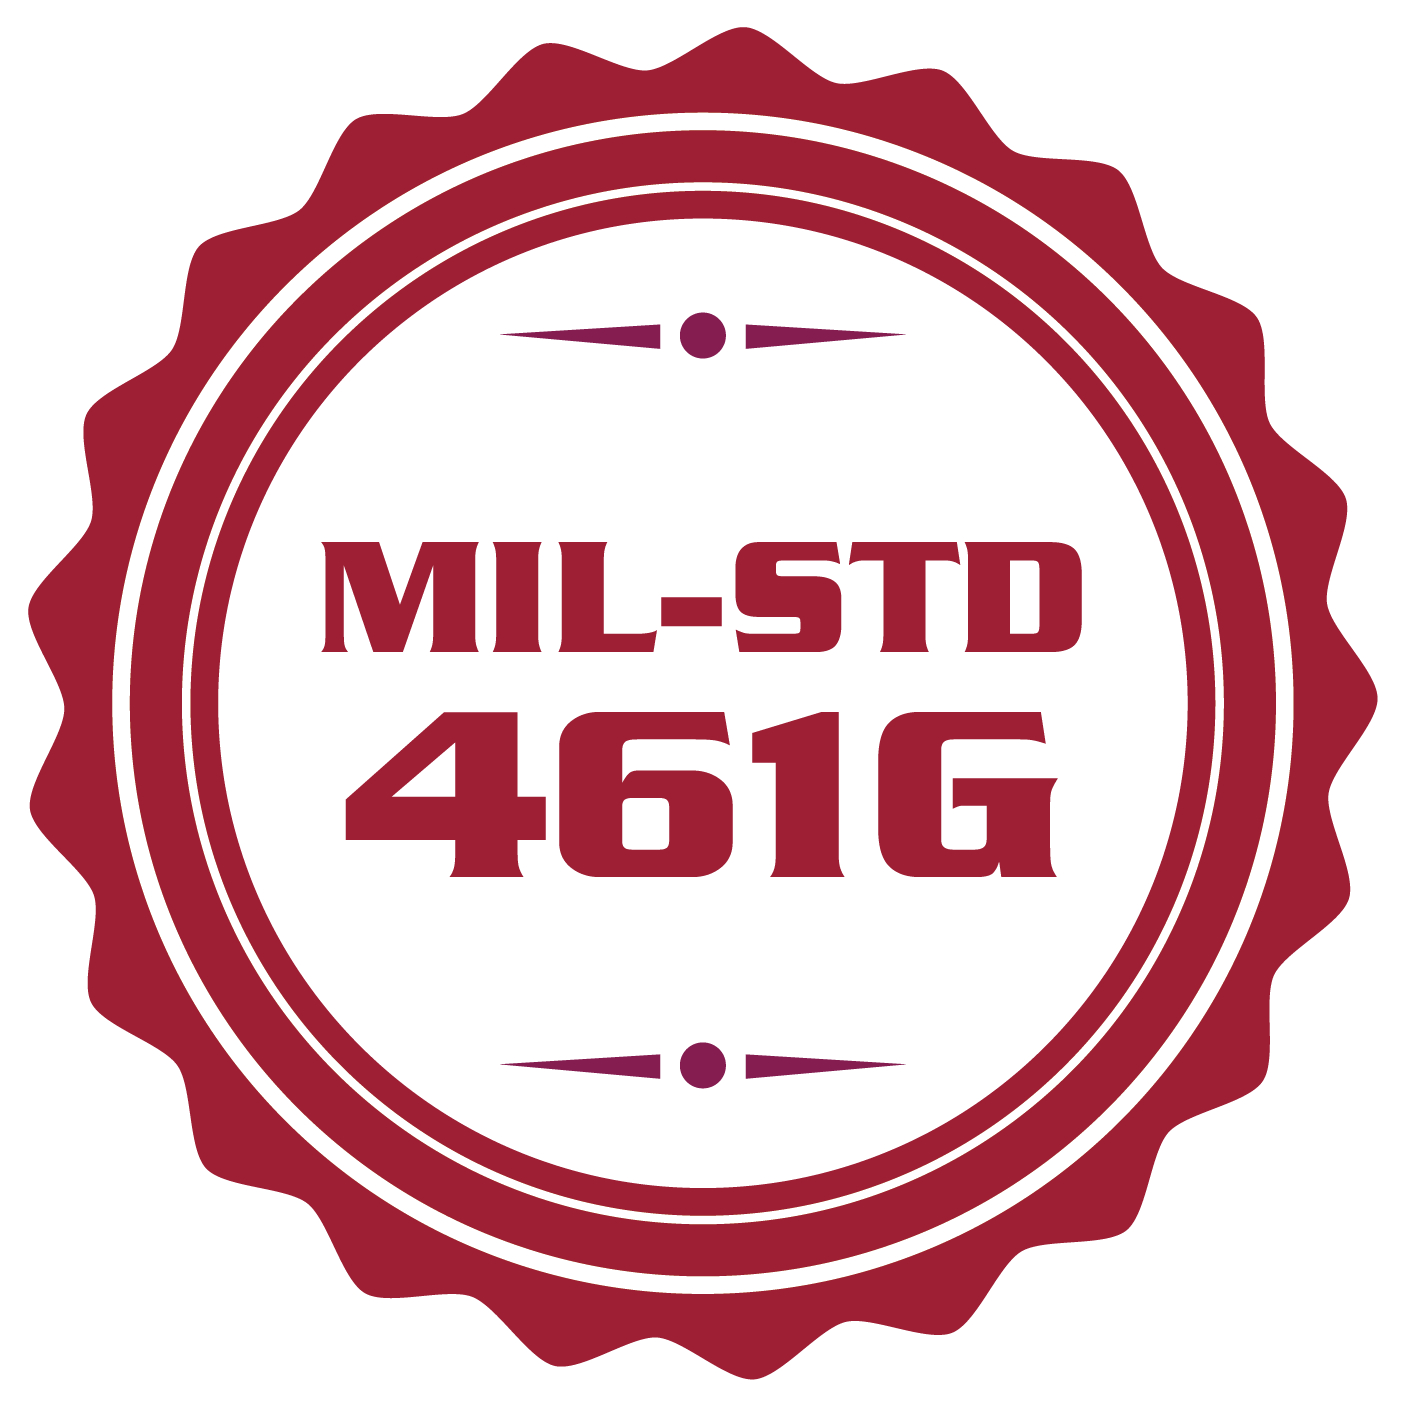 MIL-STD 461